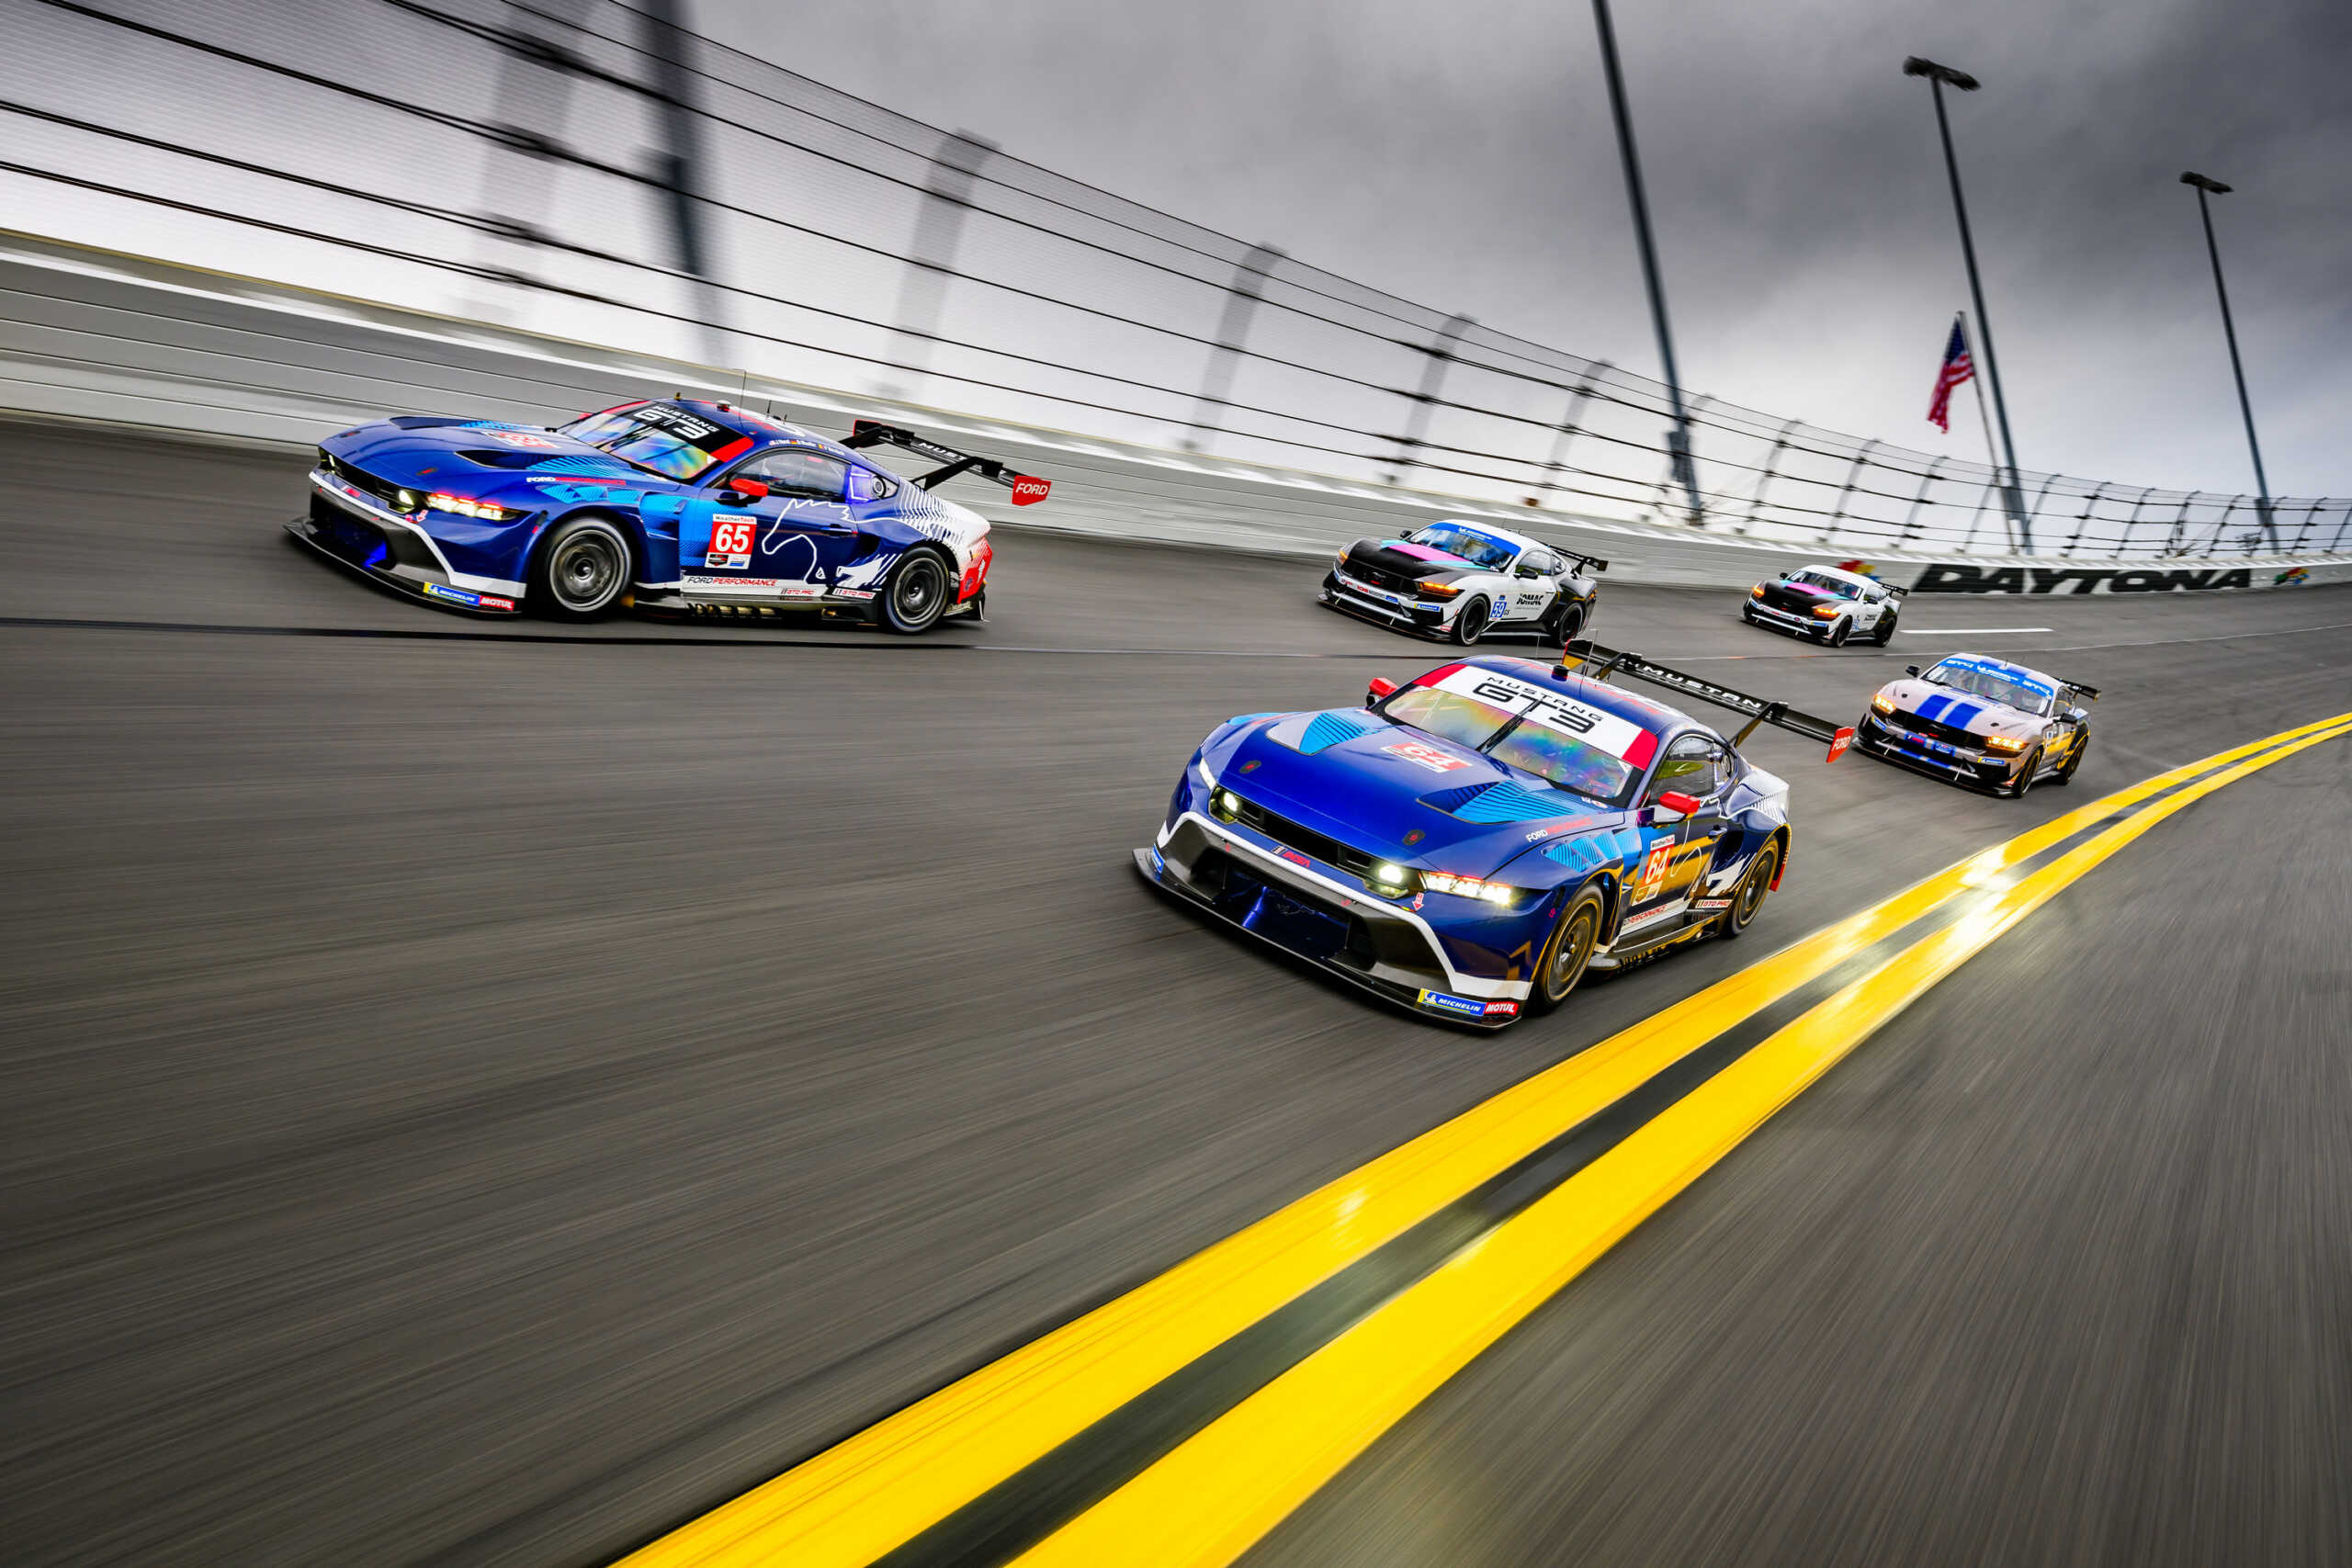 Οι Ford Mustang GT3 και GT4 κάνουν την επίσημη αγωνιστική τους πρεμιέρα στην Daytona